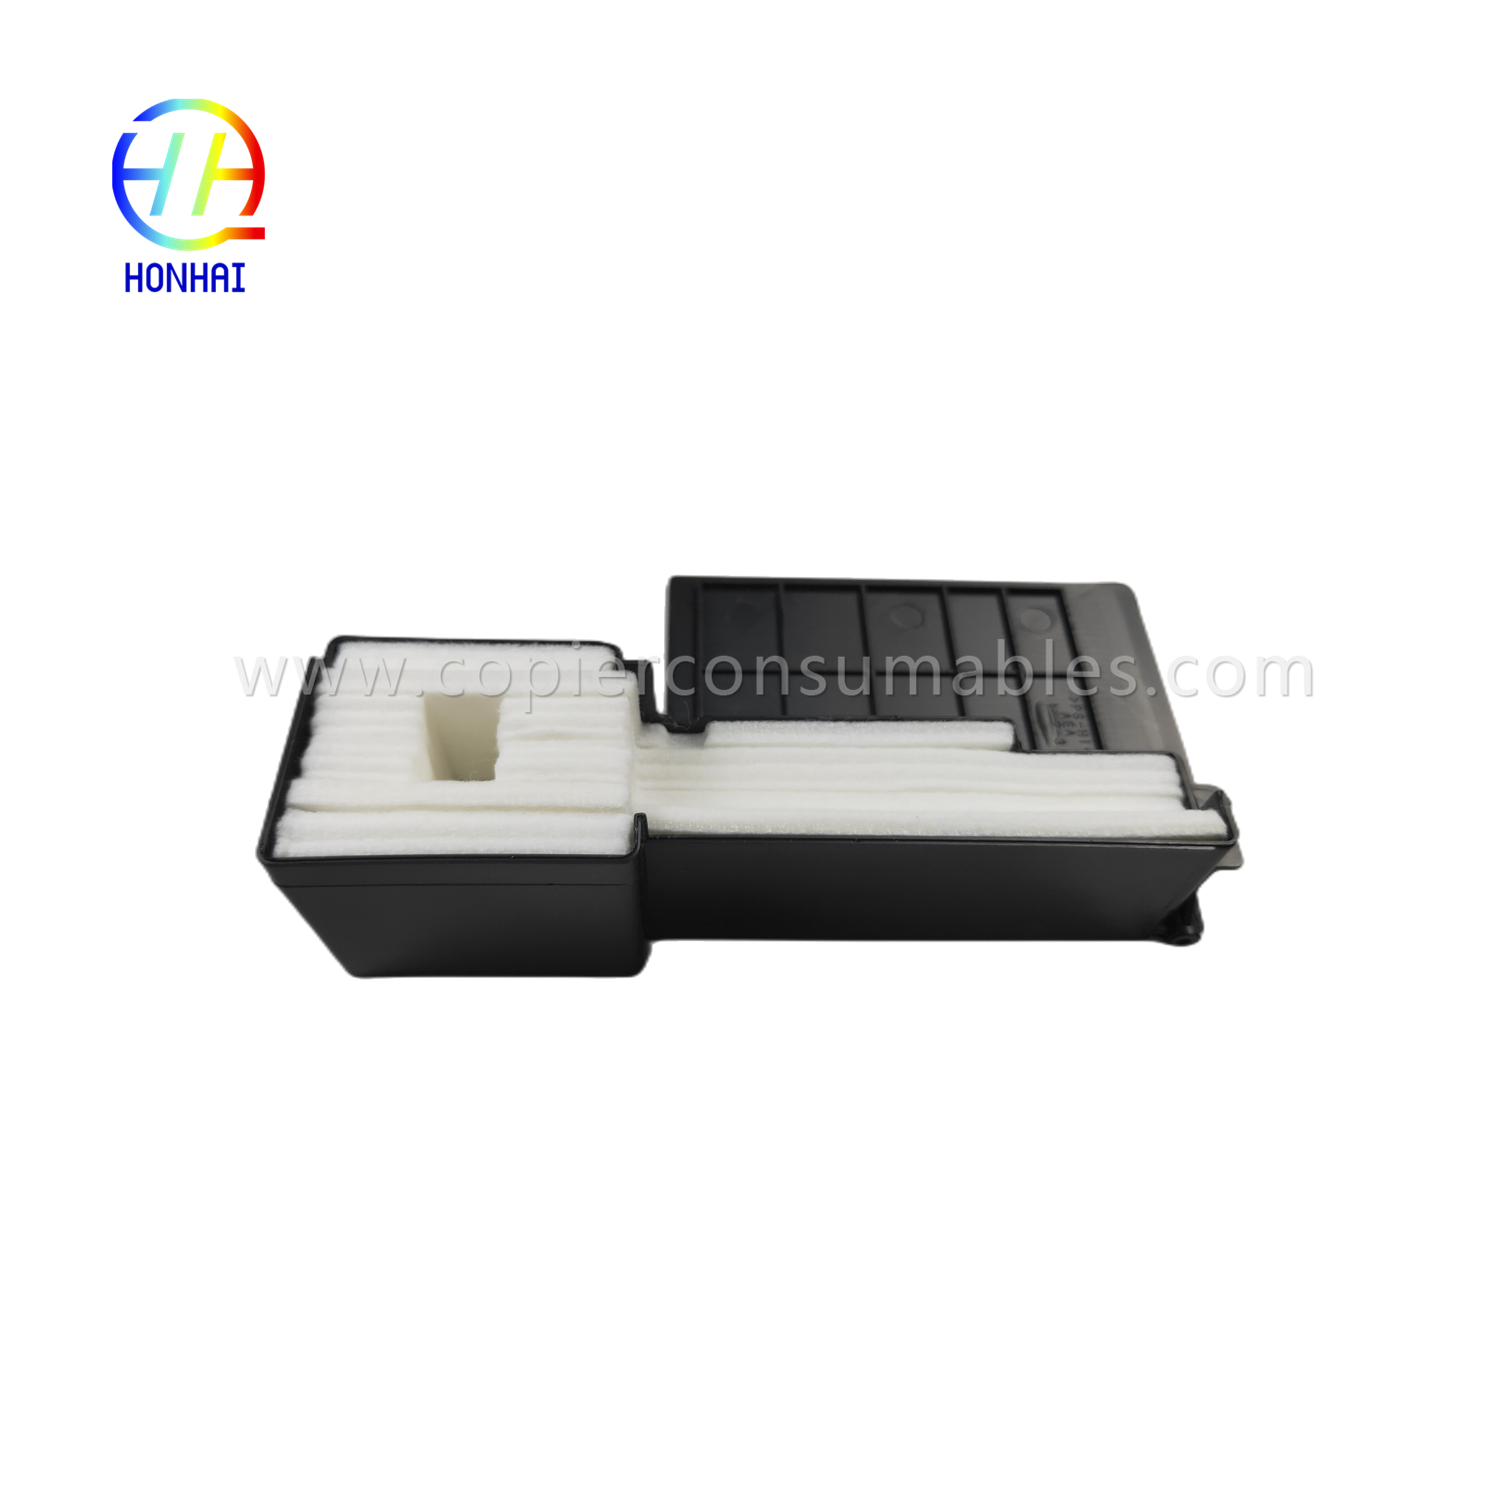 Runtah Ink Pad Pack pikeun Epson L220 L360 L380 printer